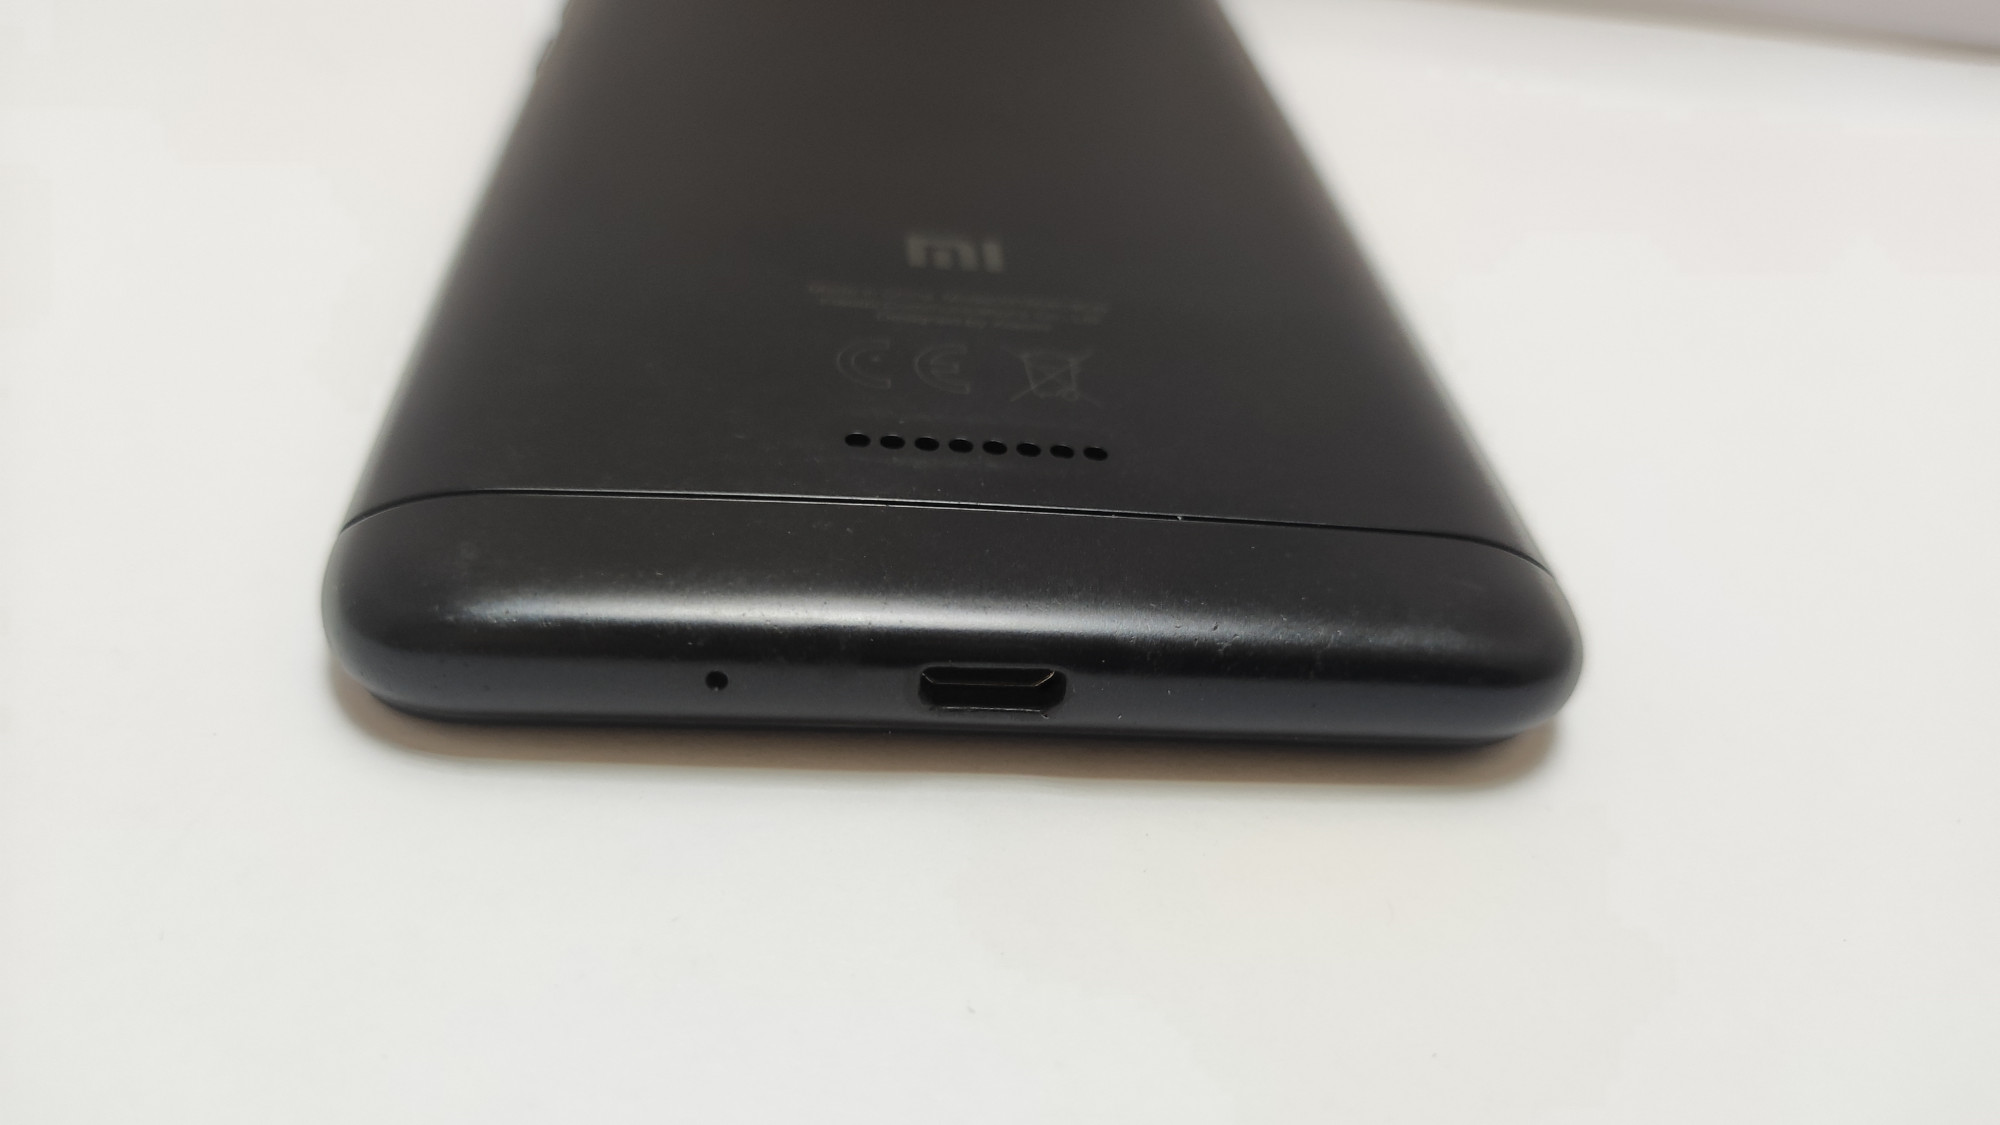 Xiaomi Redmi 6A 2/16GB 2